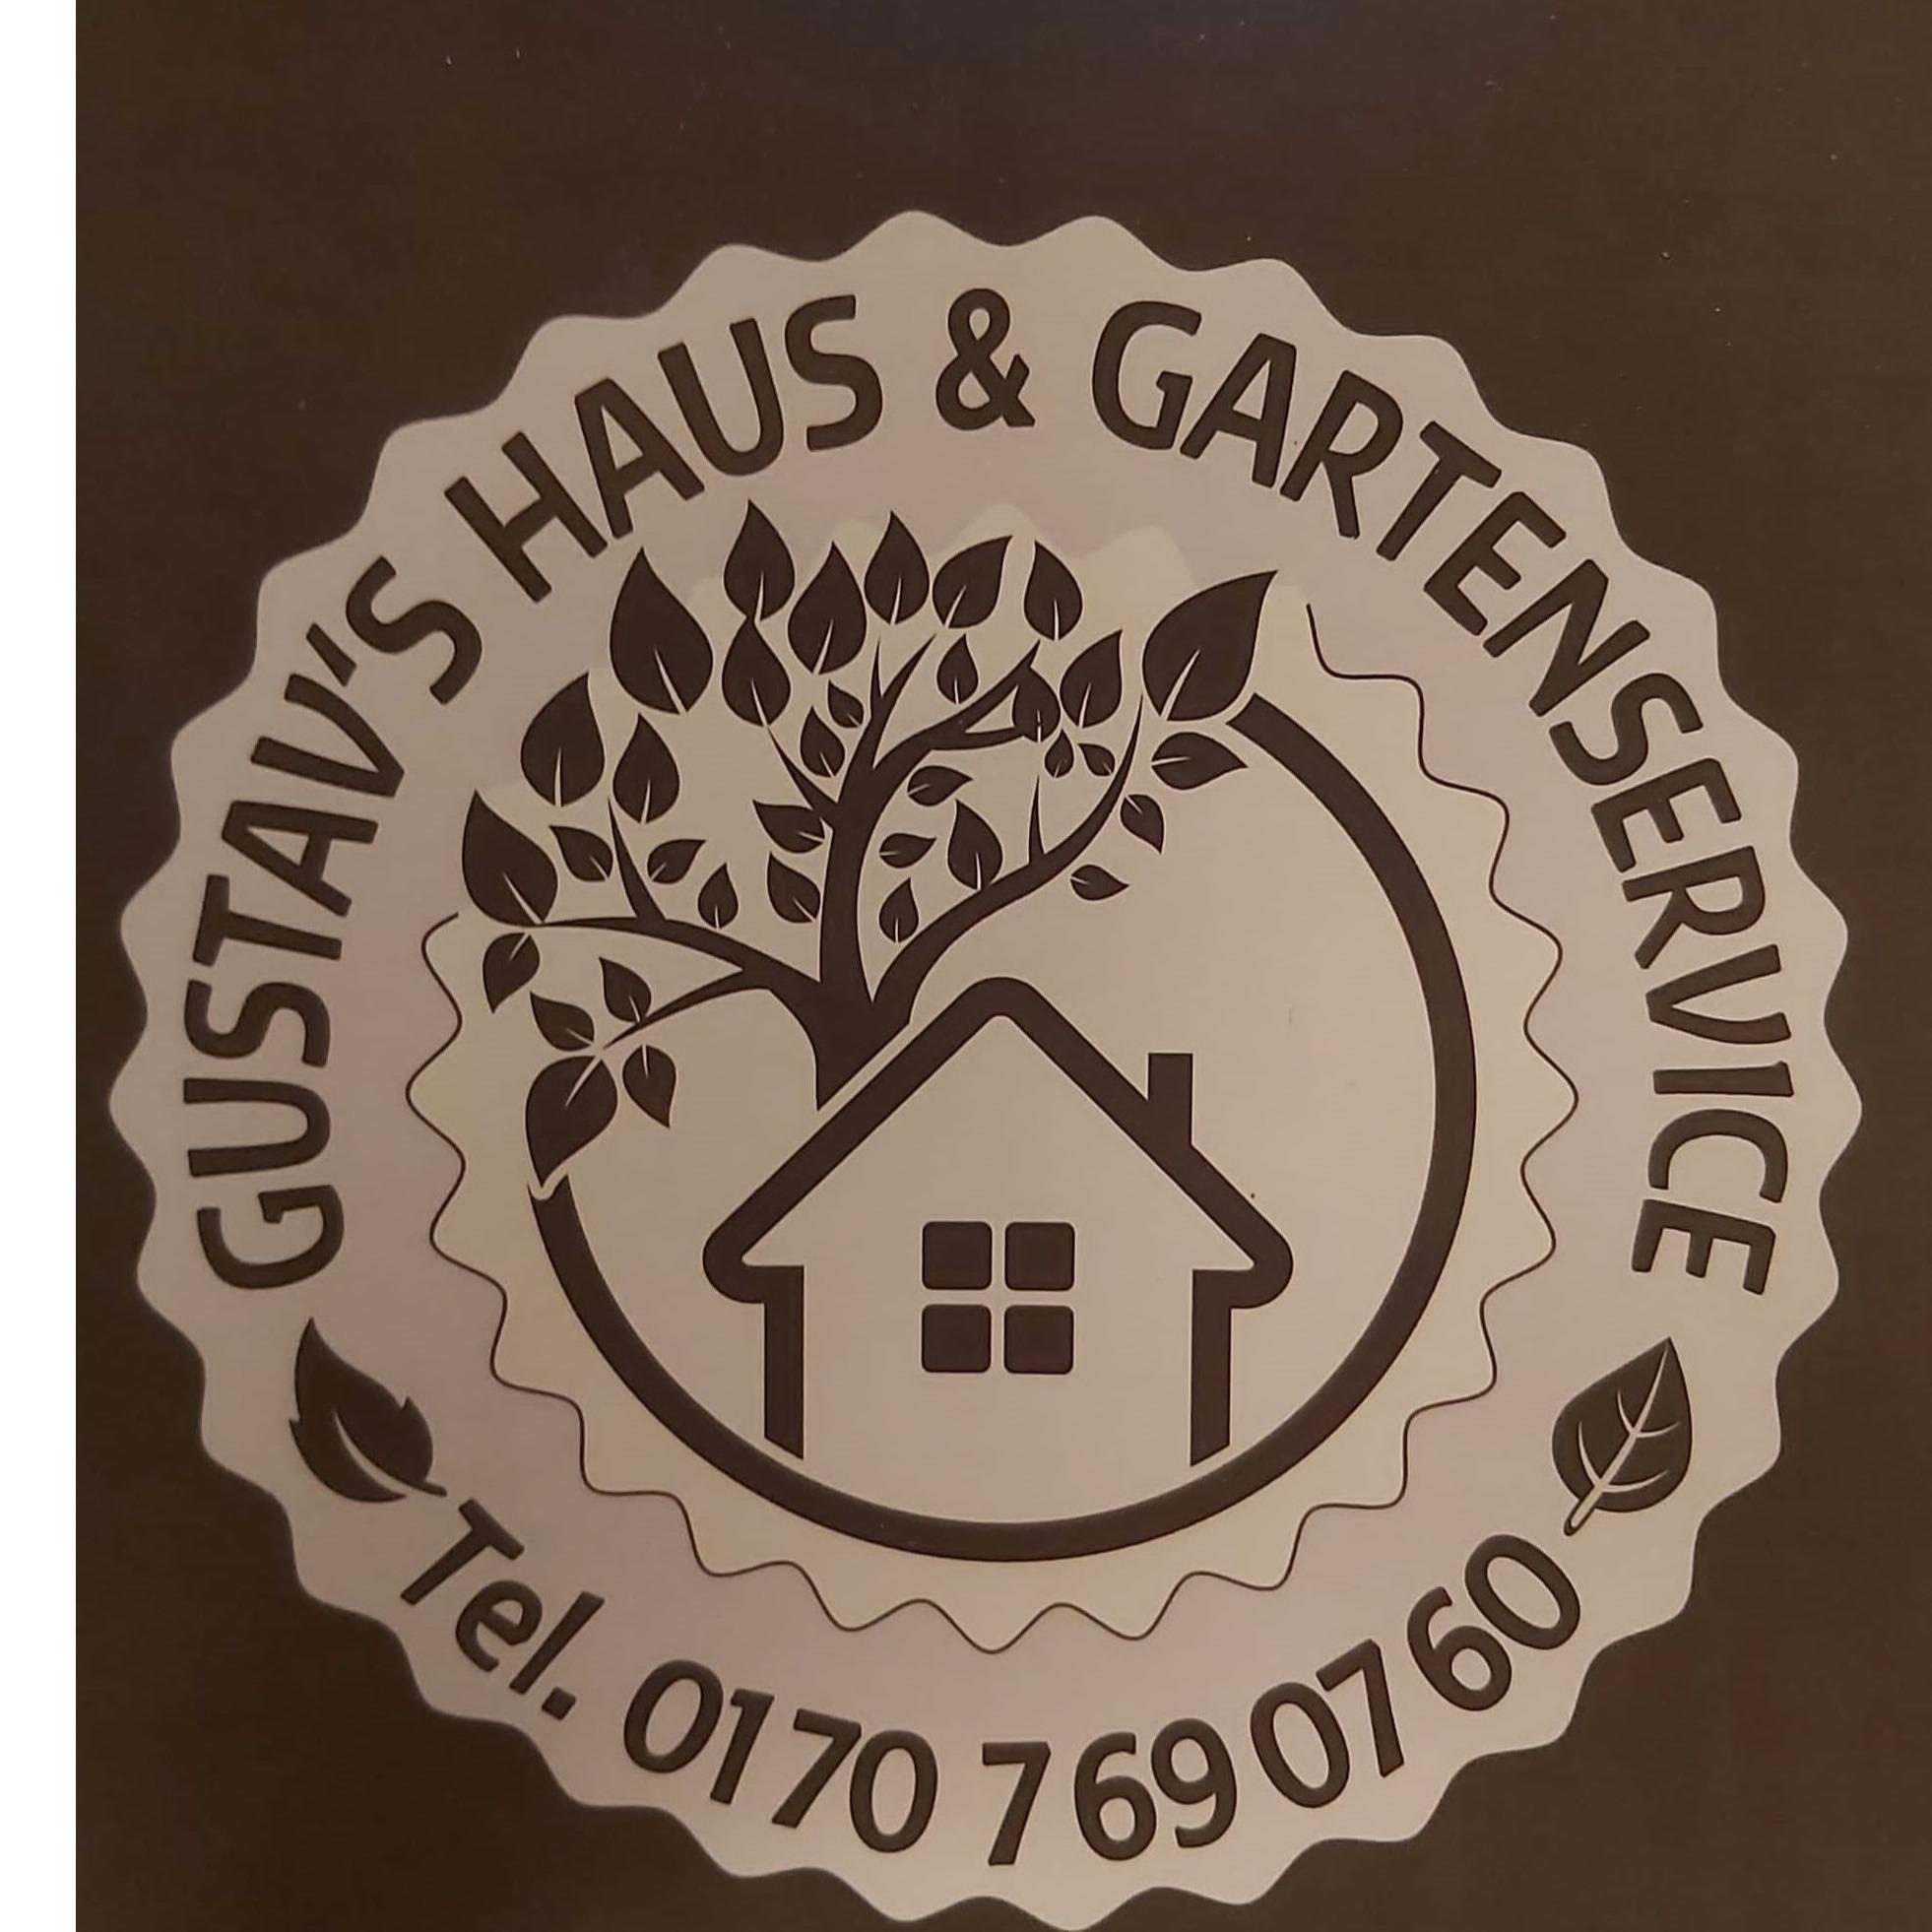 Gustav's Haus-Gartenservice